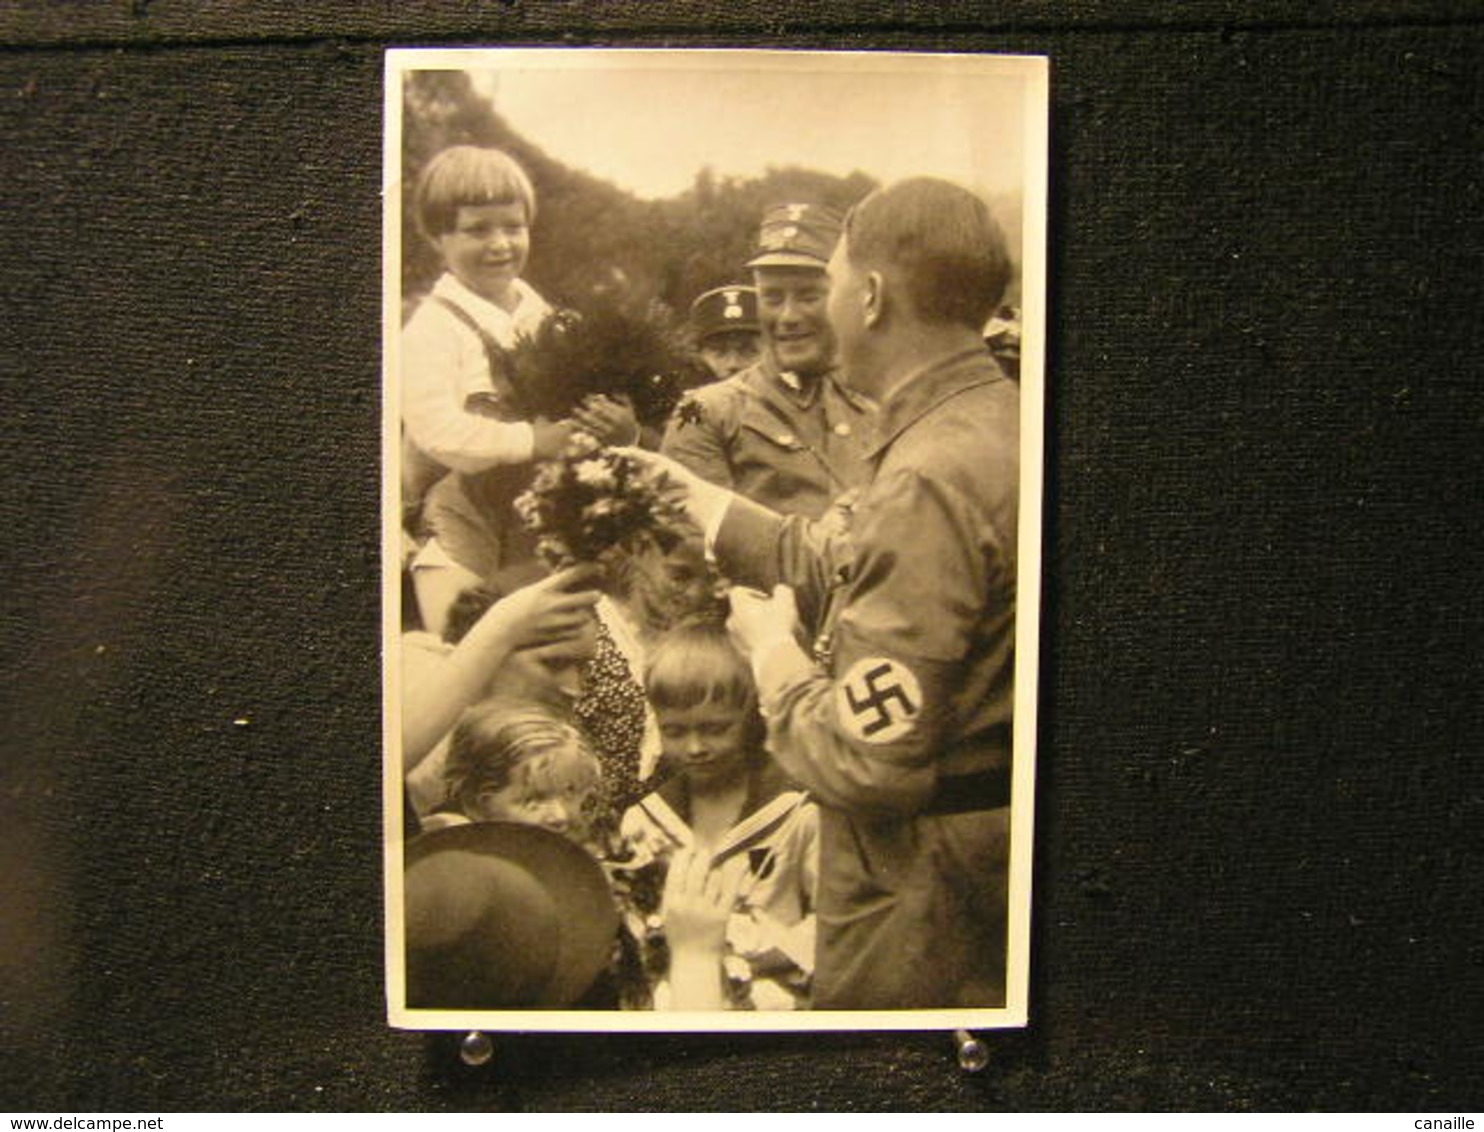 W-228 / Lot 13 images - Bild Adolf Hitler Sammelwerk Nr. 207-209-182-158-196-197-66-187-199-181-201-200-204 / Gruppe 32